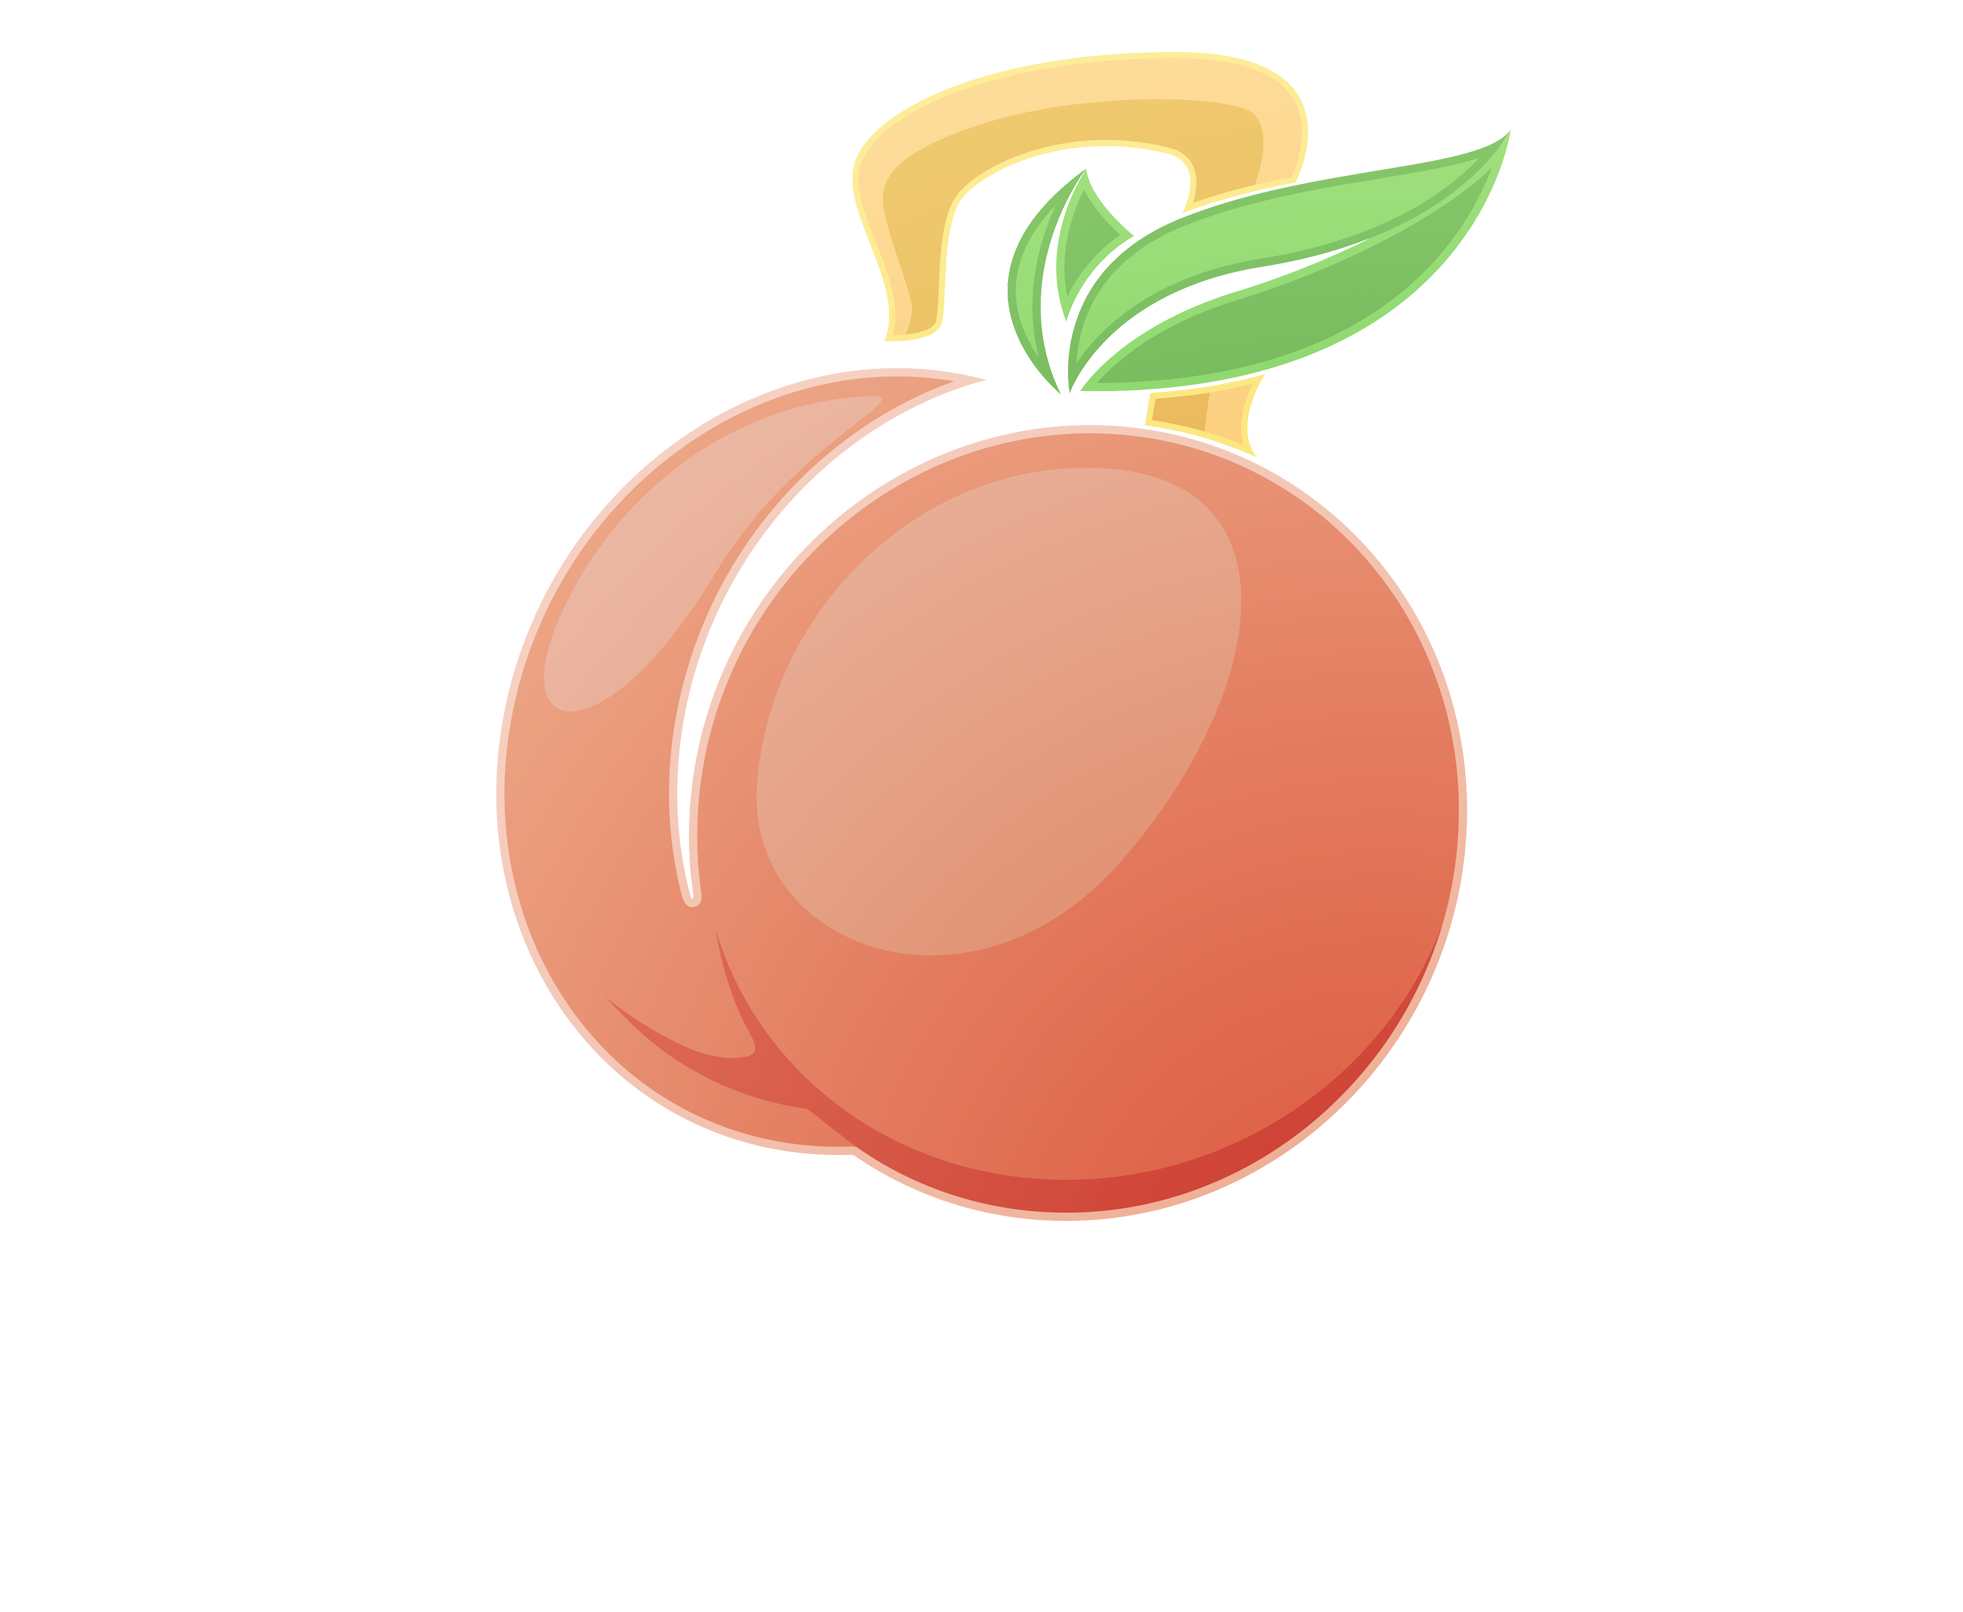 Peach Lab